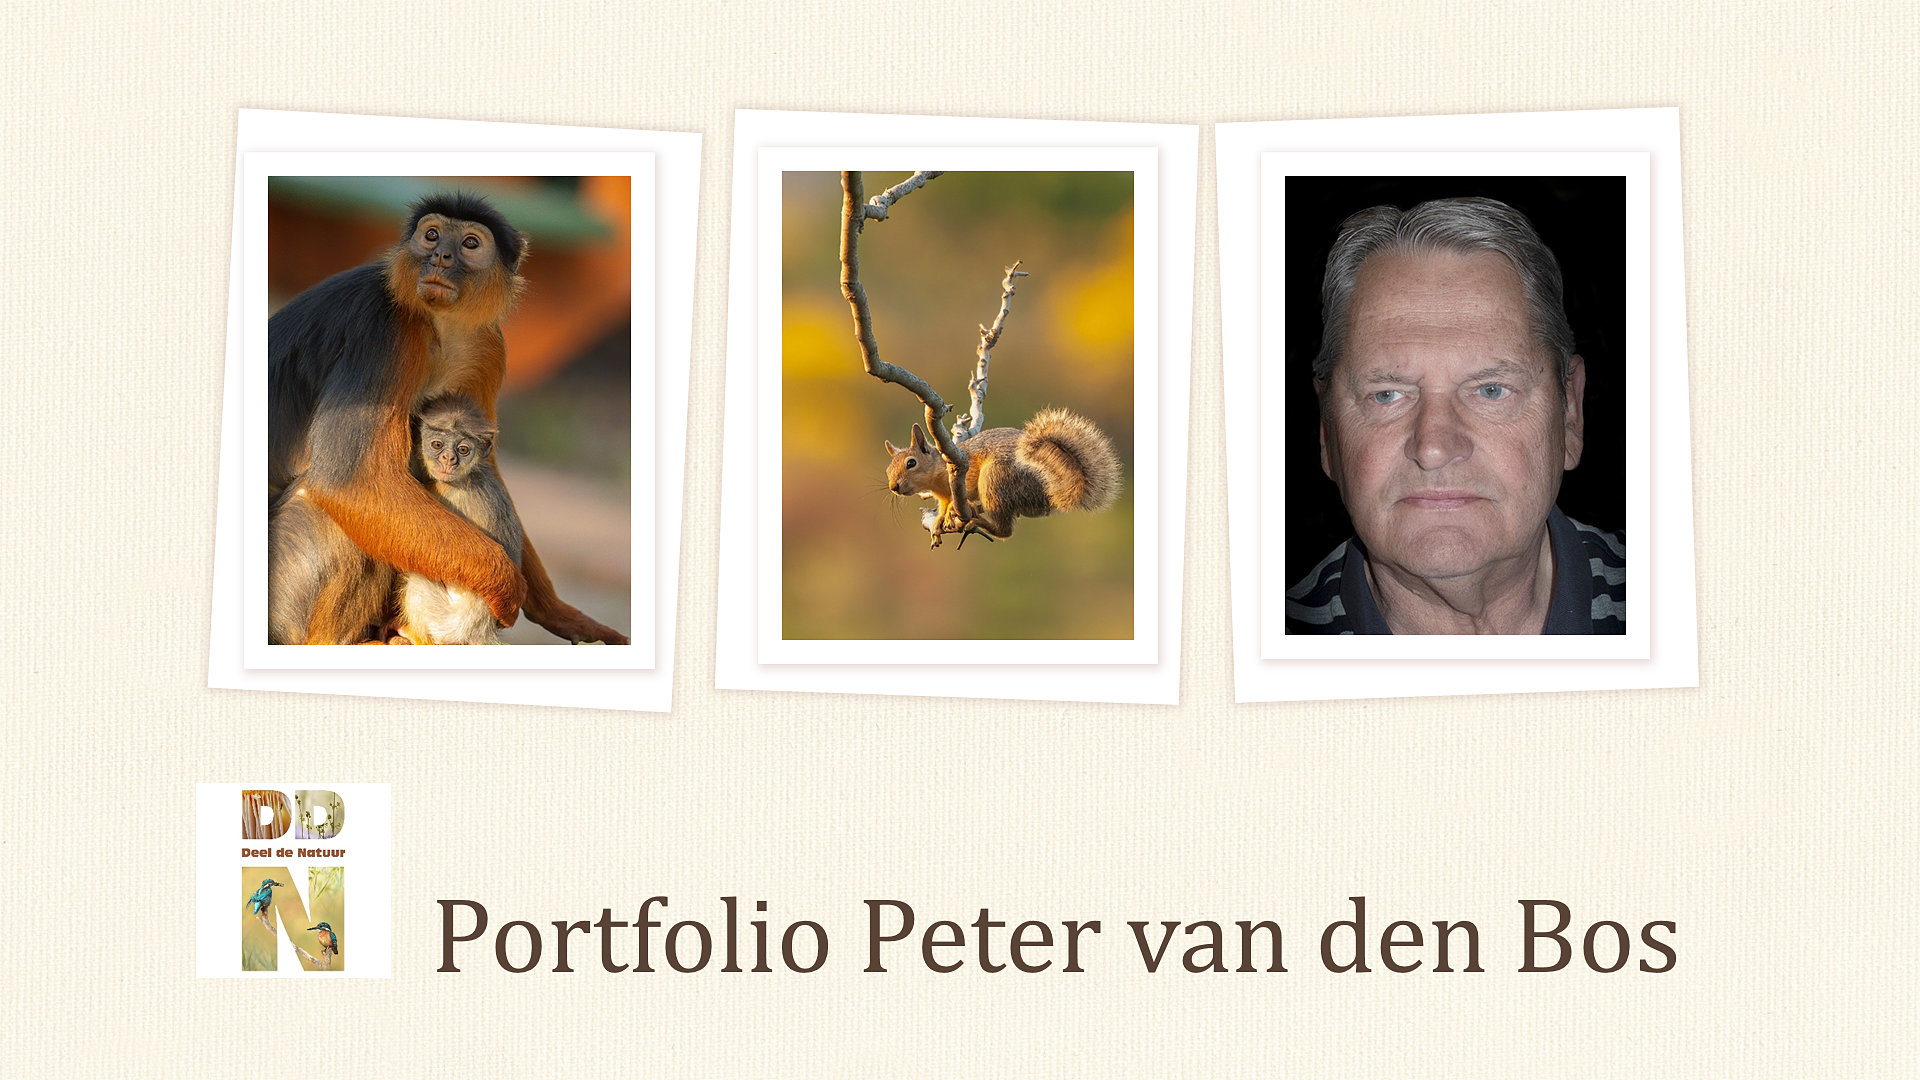 Spotlight portfolio Peter van den Bos